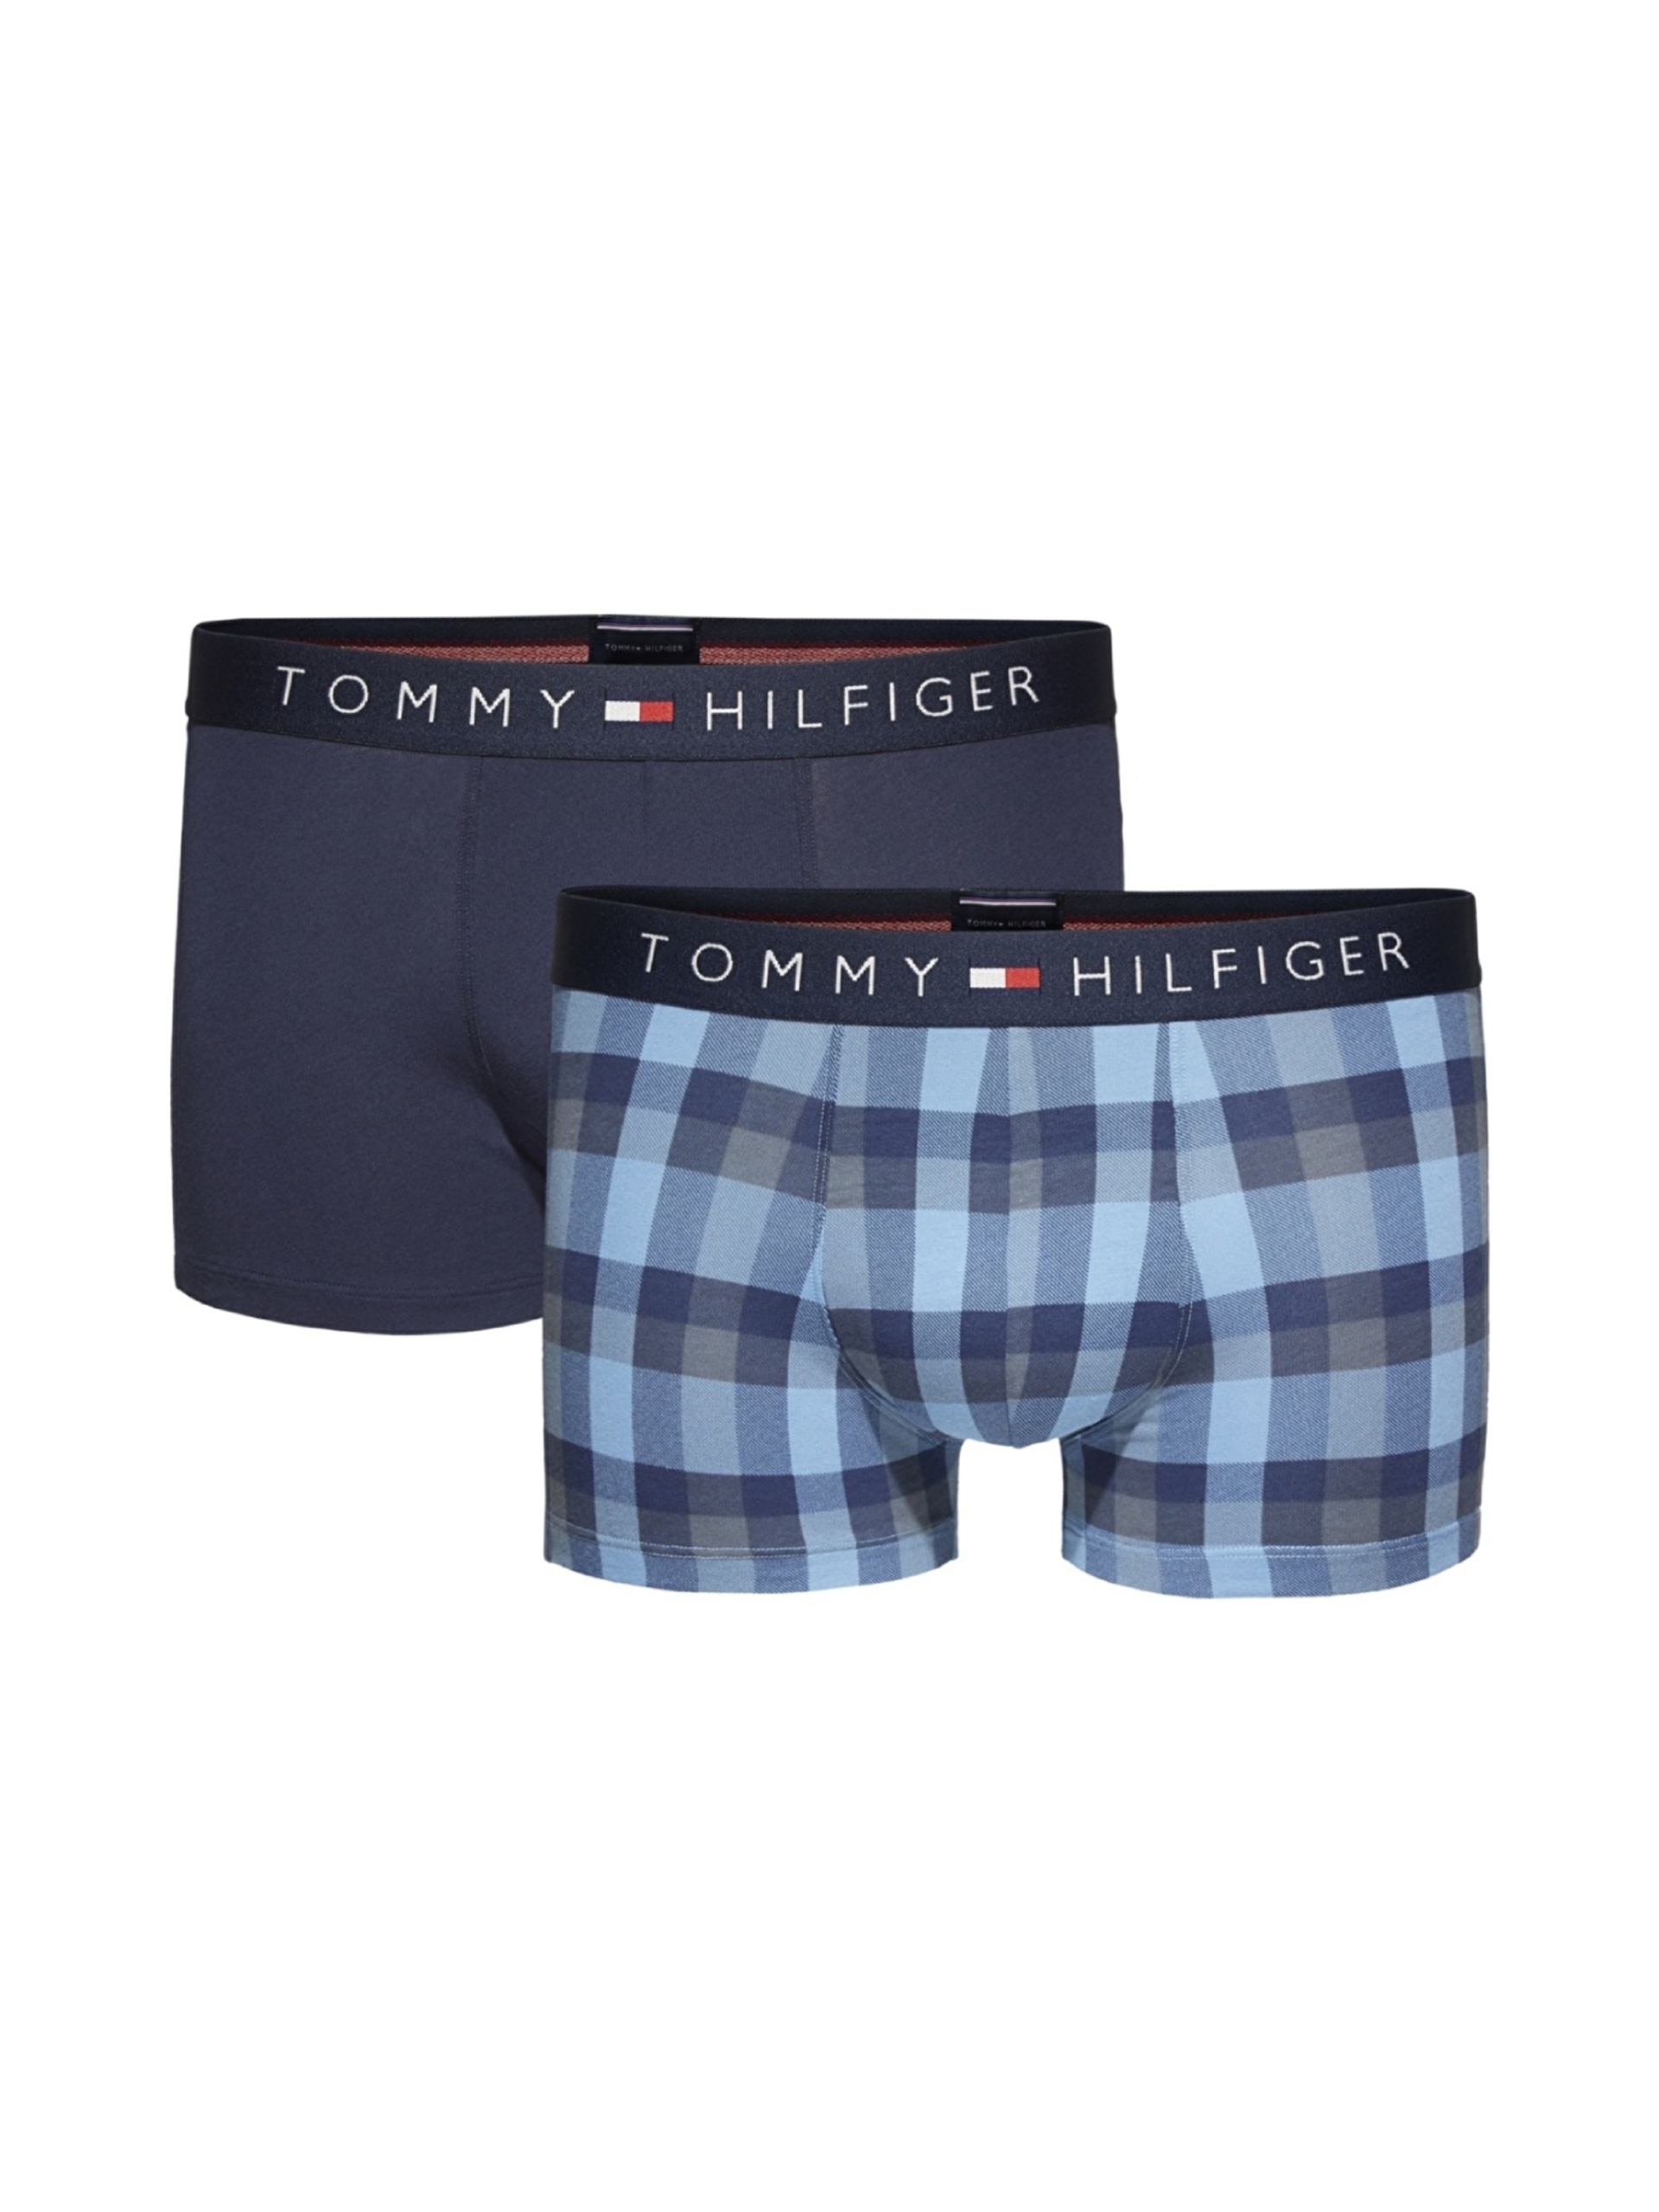 Tommy Hilfiger pánské boxerky 2 pack - S (001)